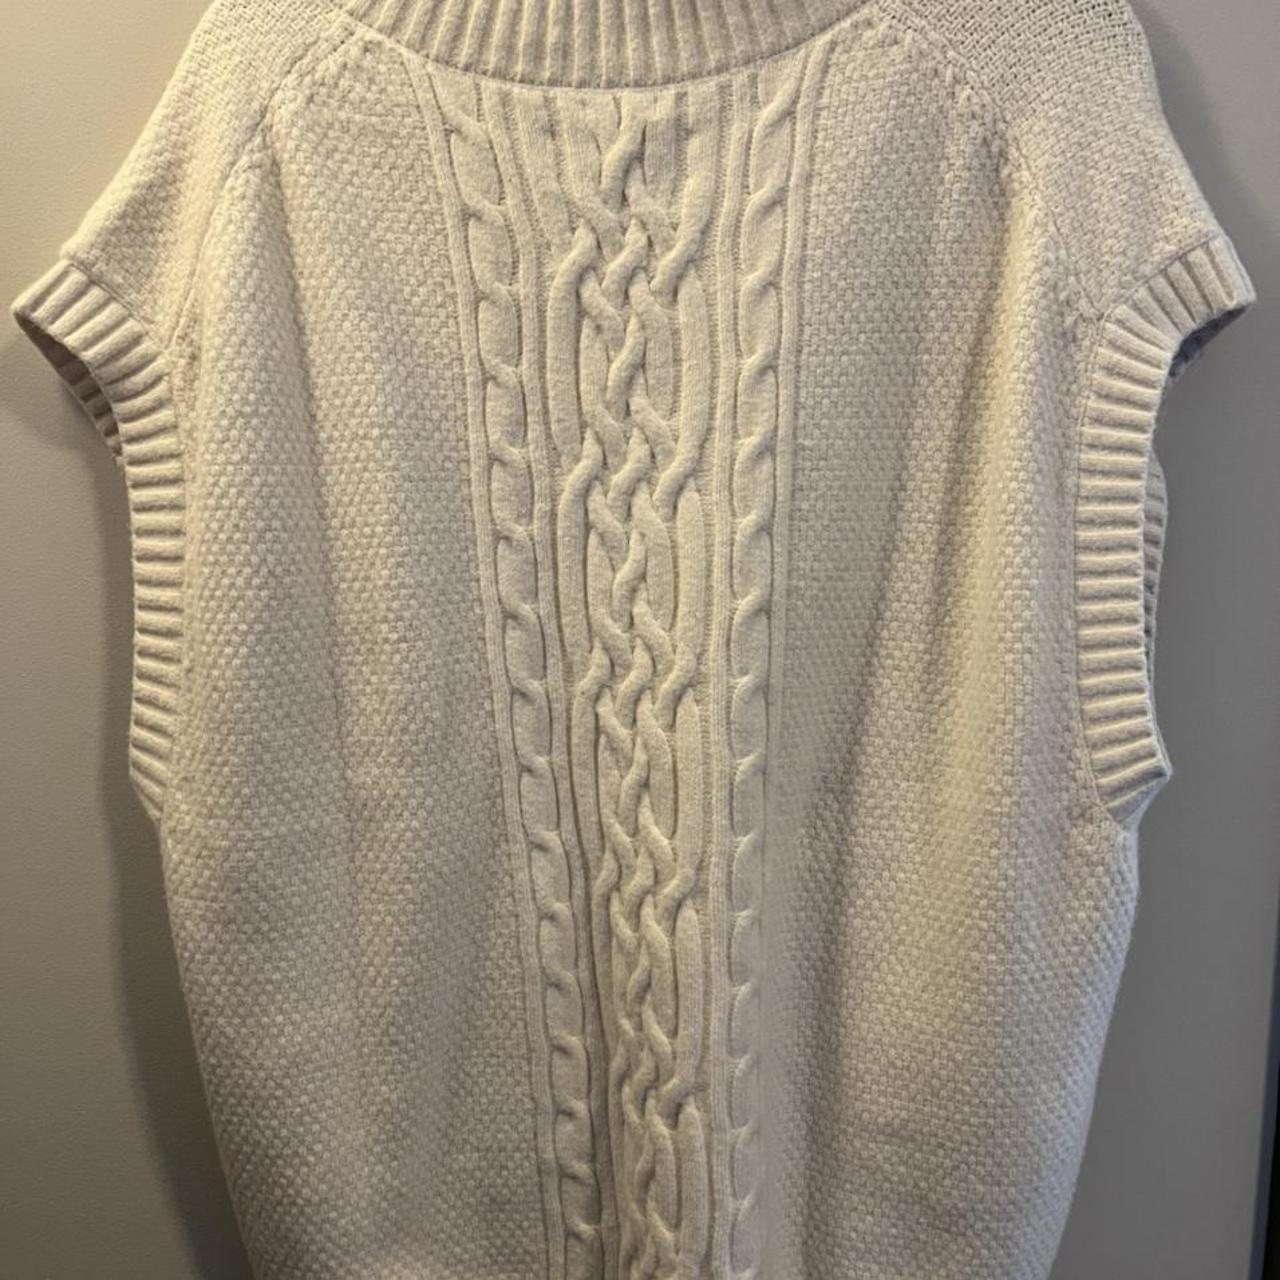 Abercrombie & Fitch men’s sweater vest (size XL).... - Depop